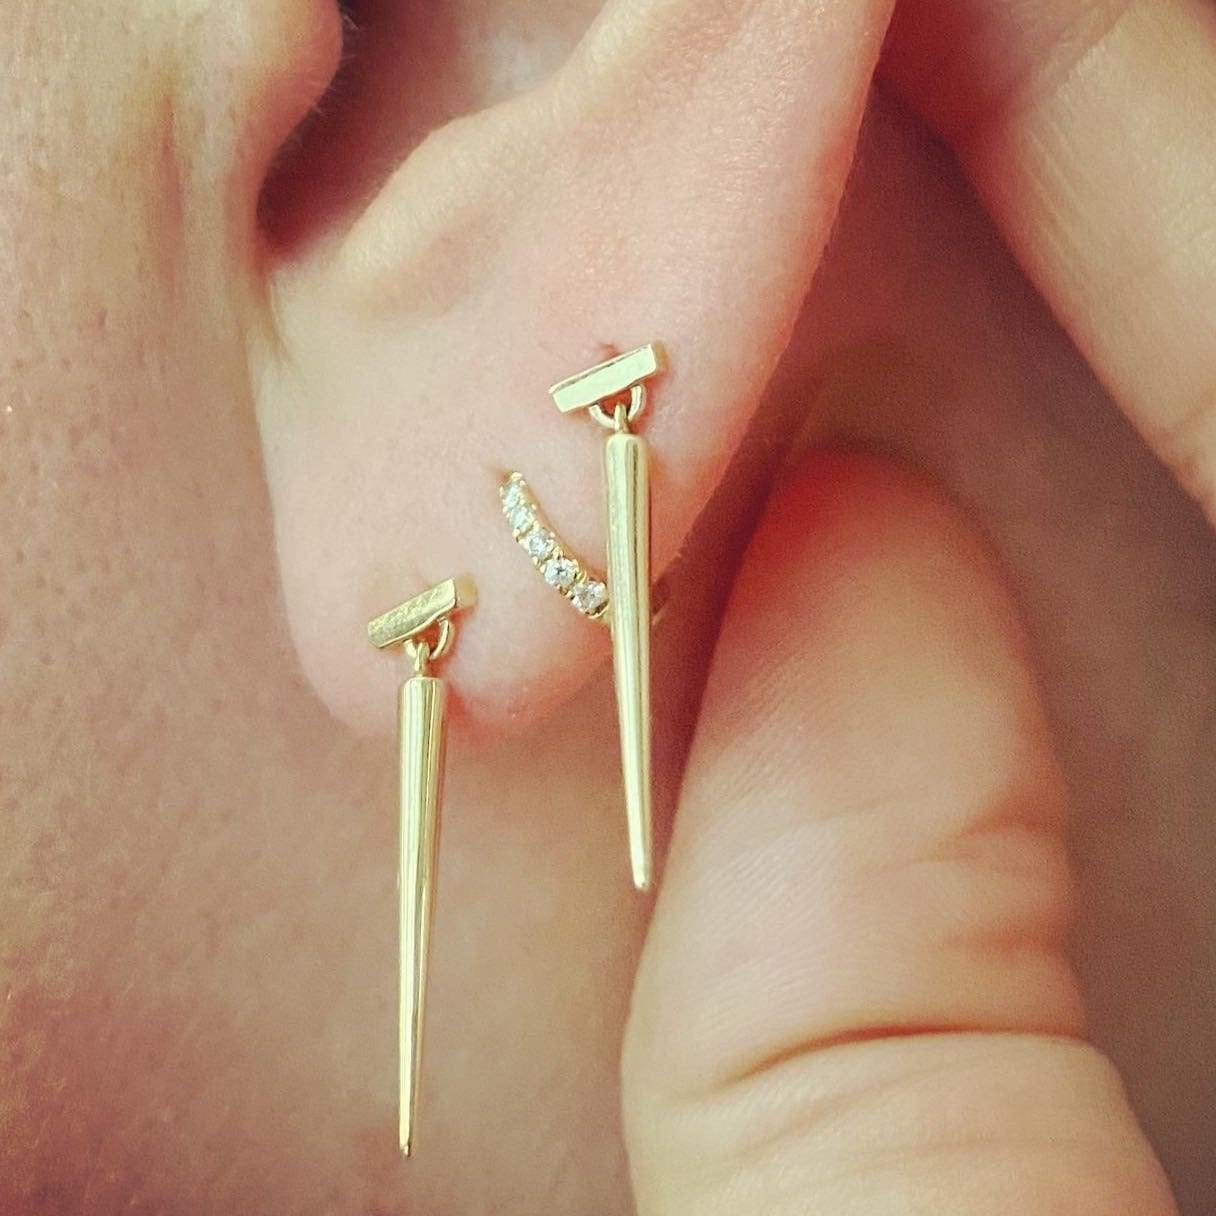 Gold 'En Pointe' Drop Earrings